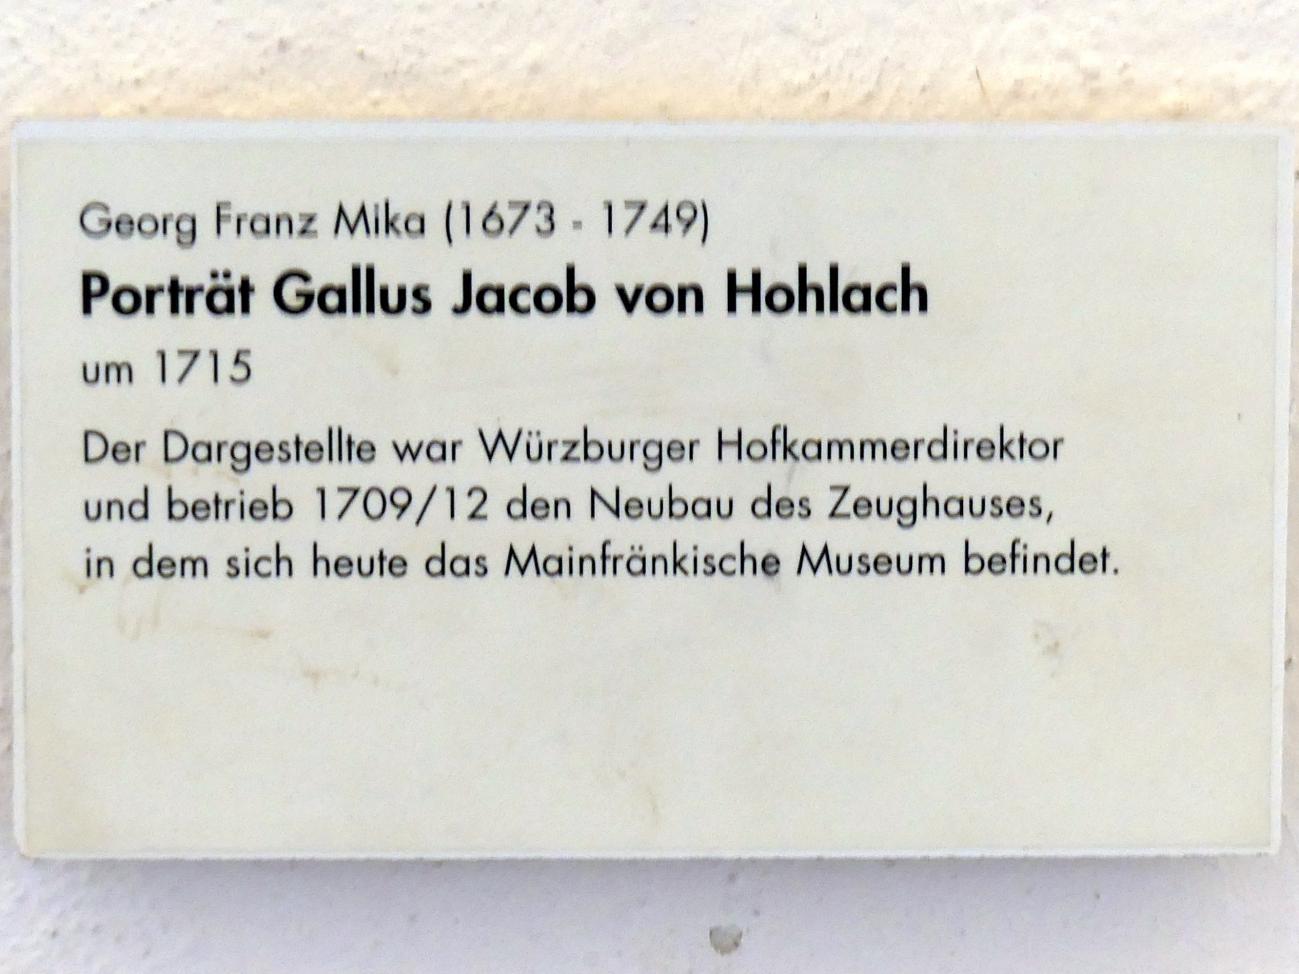 Georg Franz Mika (1712–1715), Porträt Gallus Jacob von Hohlach, Würzburg, Museum für Franken (ehem. Mainfränkisches Museum), Treppenhaus, um 1715, Bild 2/2